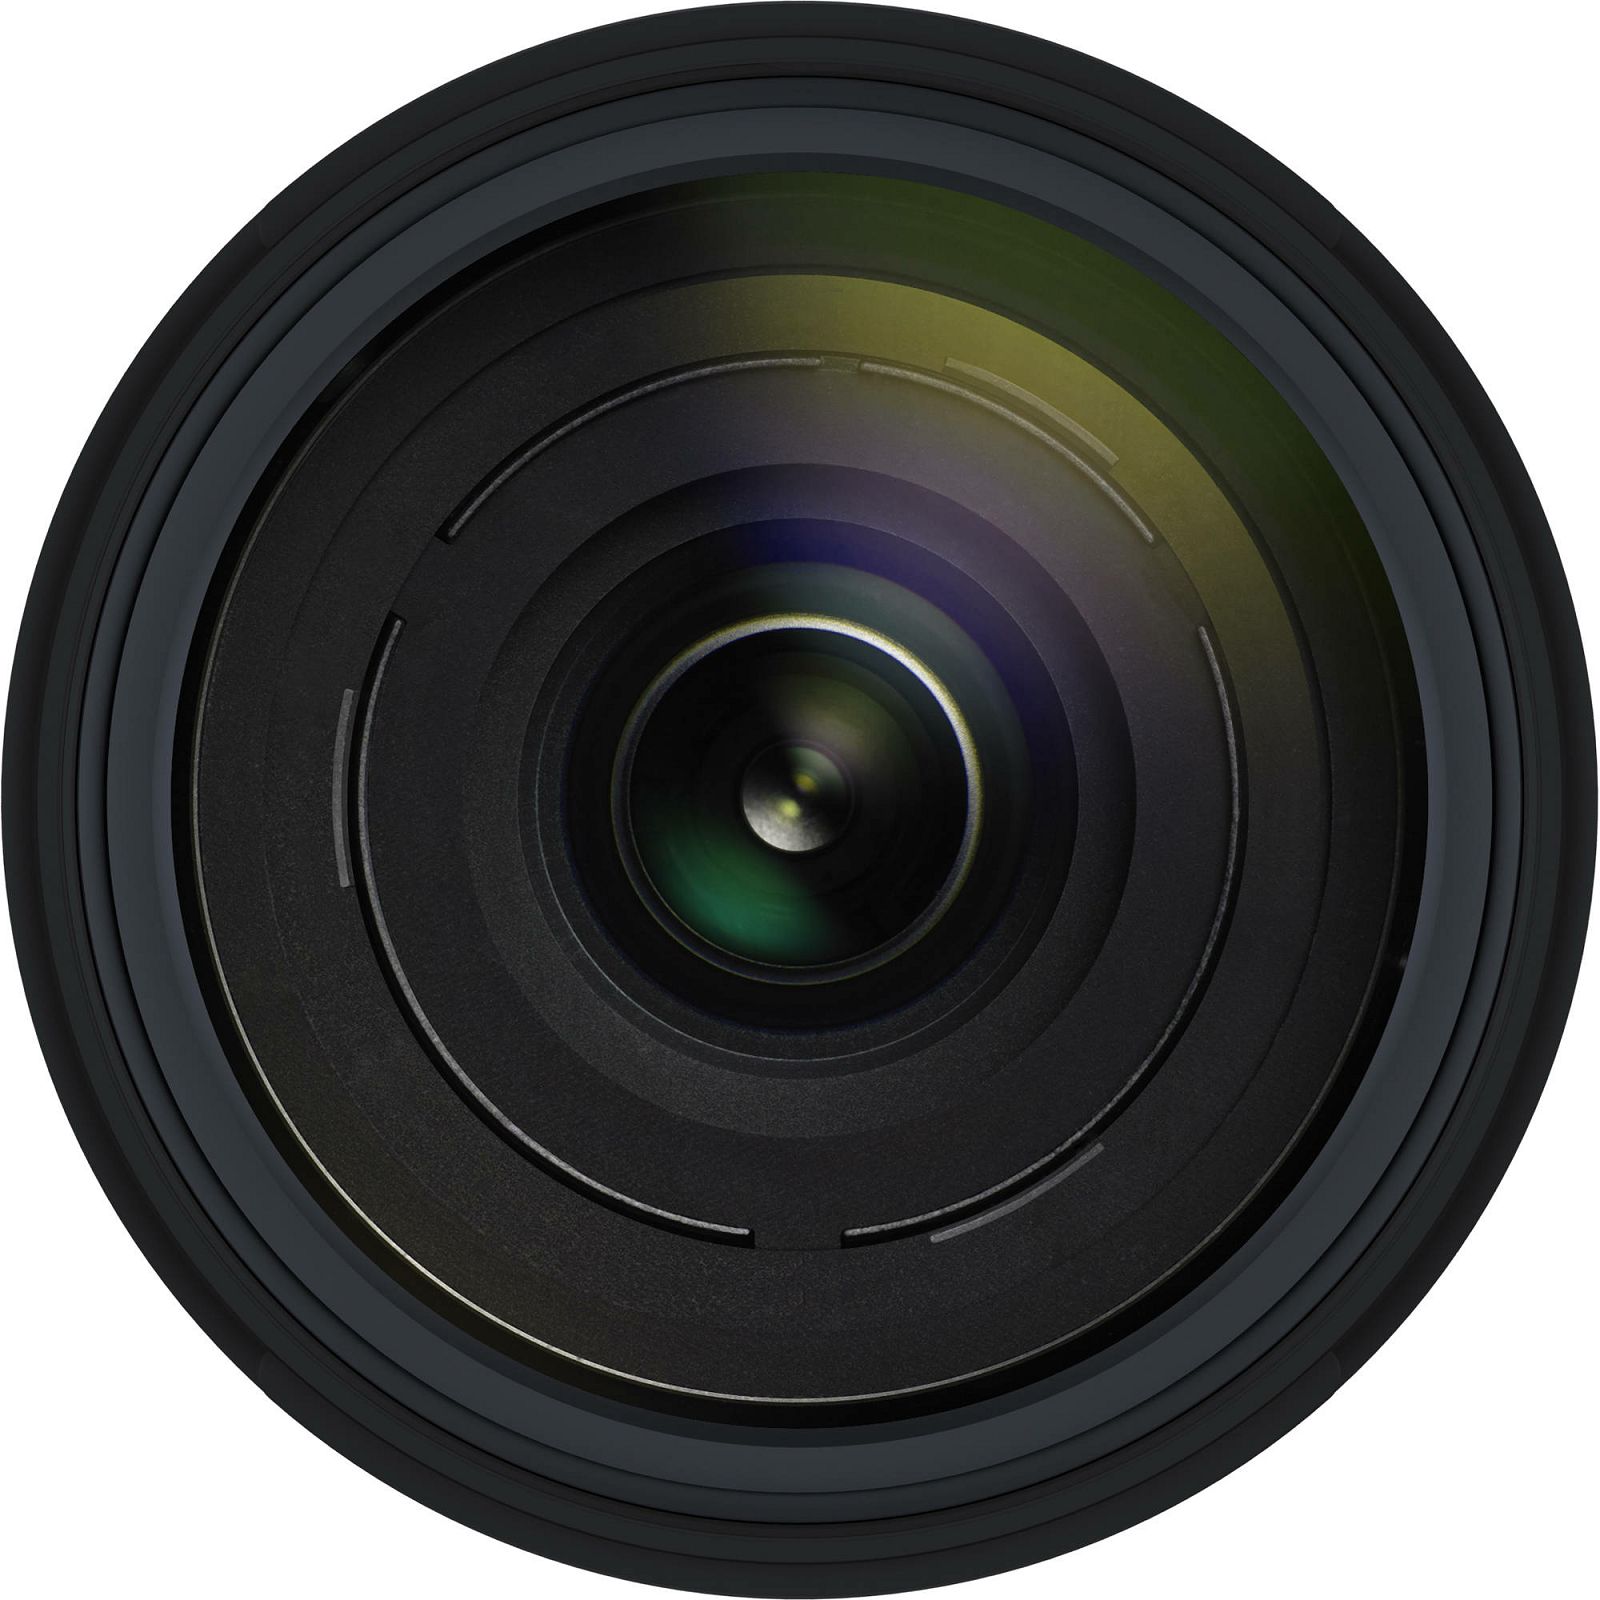 Tamron 18-400mm f/3.5-6.3 Di II VC HLD allround objektiv za Nikon DX (B028N)